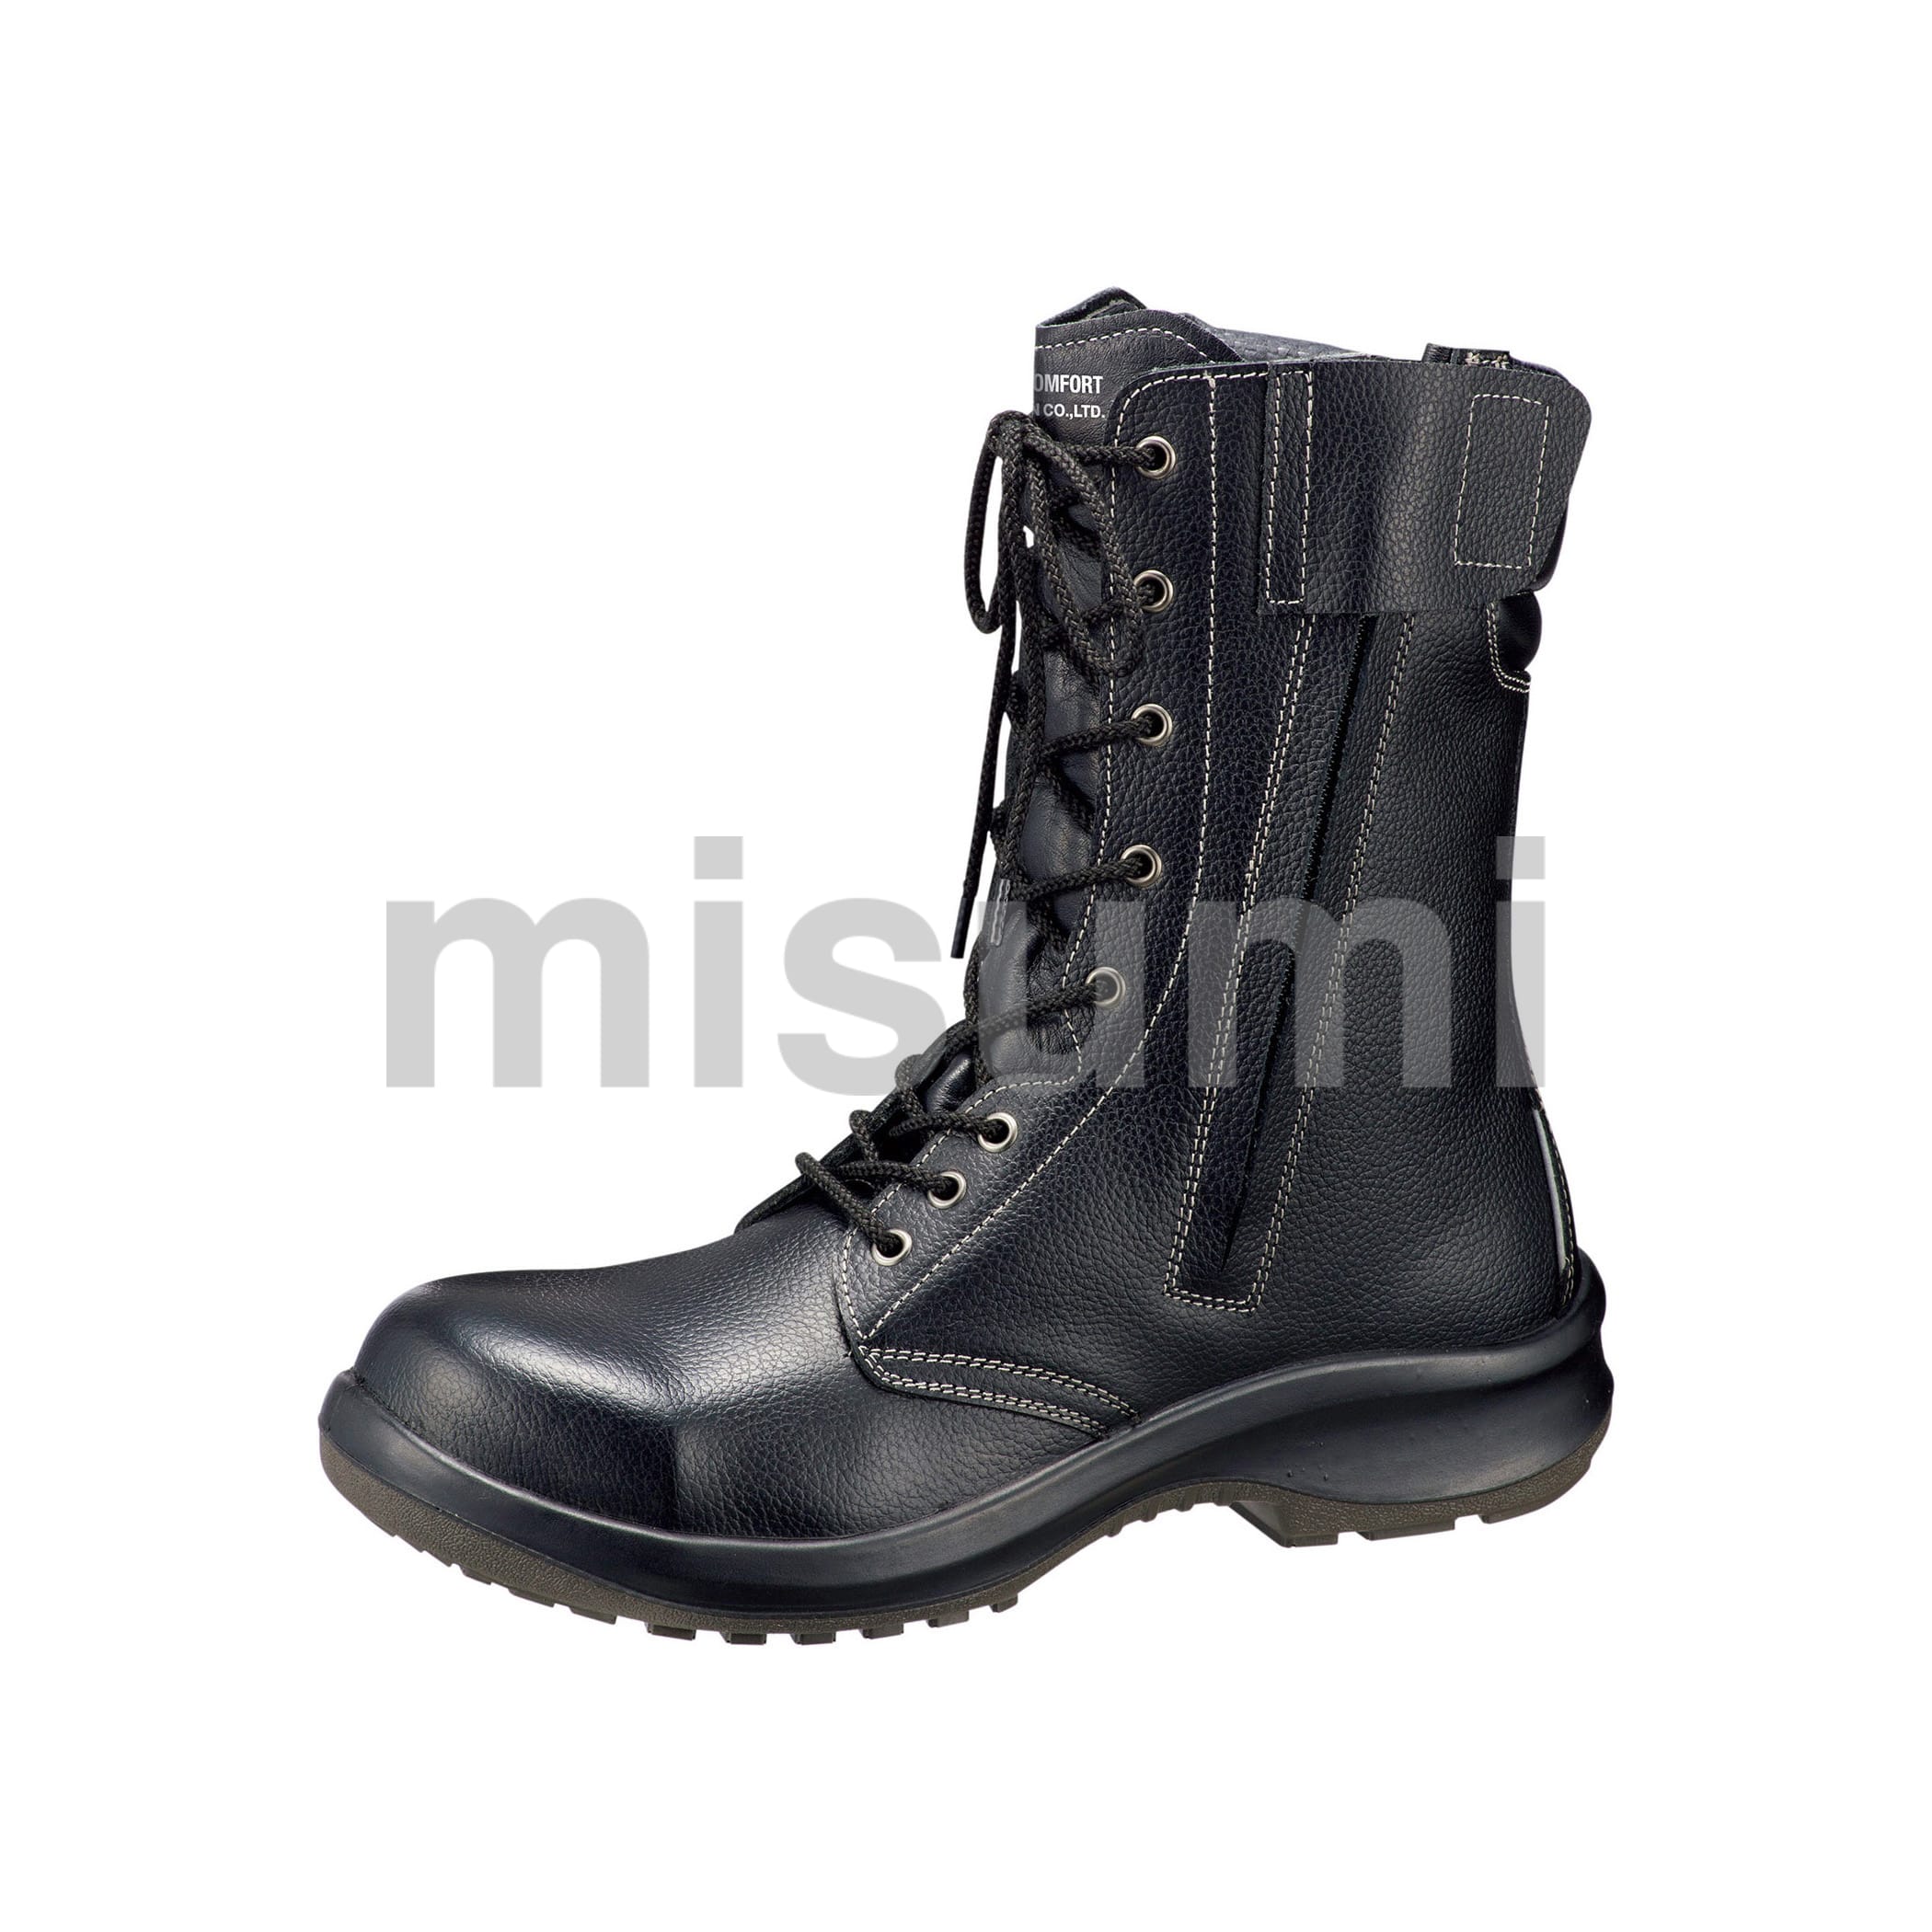 ミドリ安全 安全靴 JIS規格 マジックタイプ 長編上靴 プレミアムコンフォート PRM235 マジック ブラック 26.5 cm 3E - 3